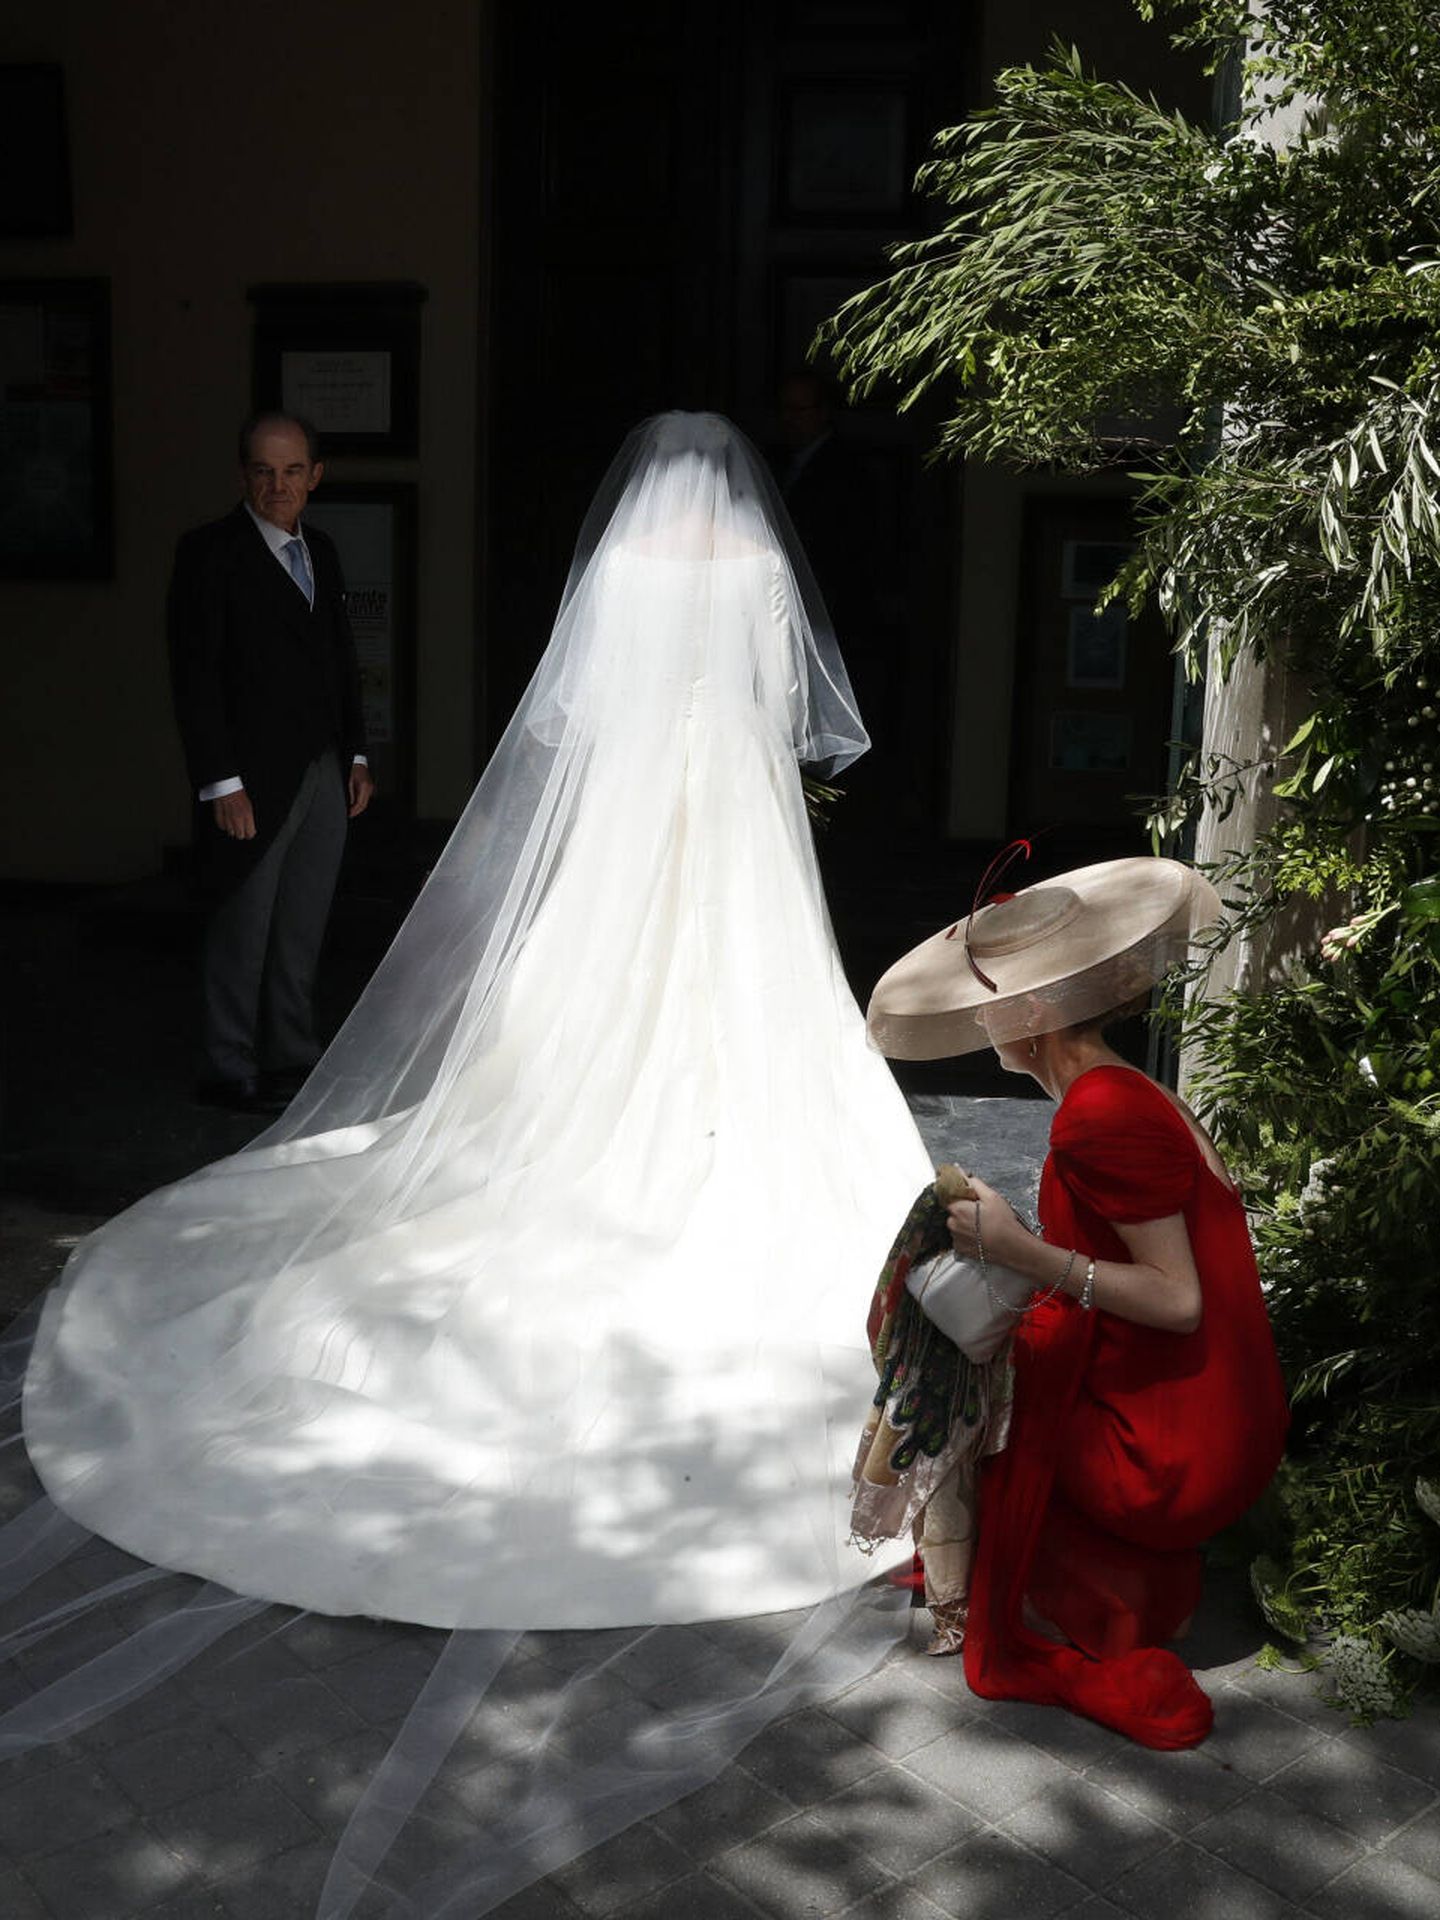 Detalle del vestido de la novia, visto por detrás. (Gtres)